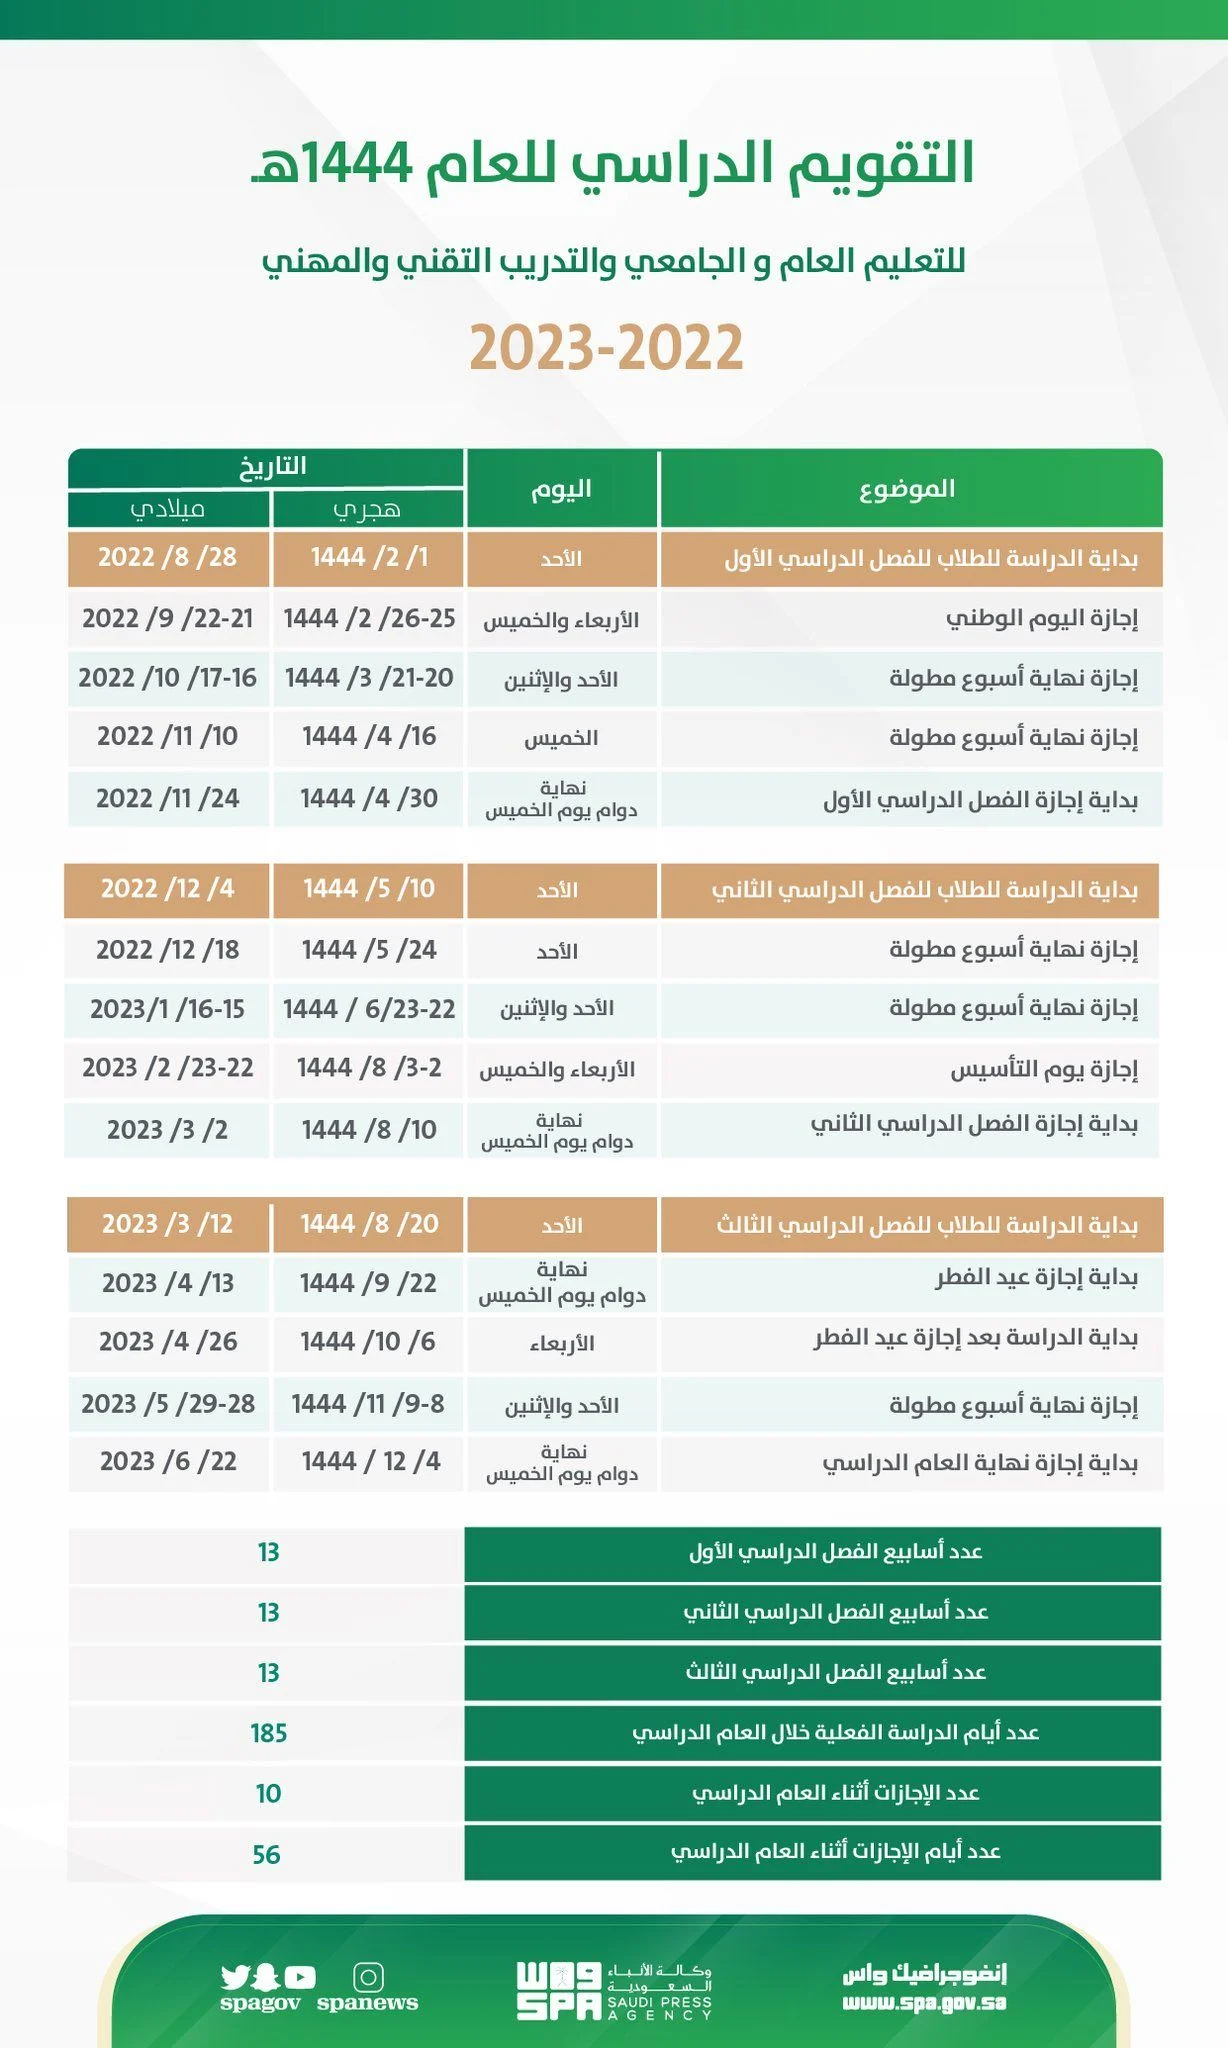 الدراسي.webp - عاجل من وزارة التعليم السعودية حول موعد انطلاق الفصل الثالث لجميع مدارس المملكة